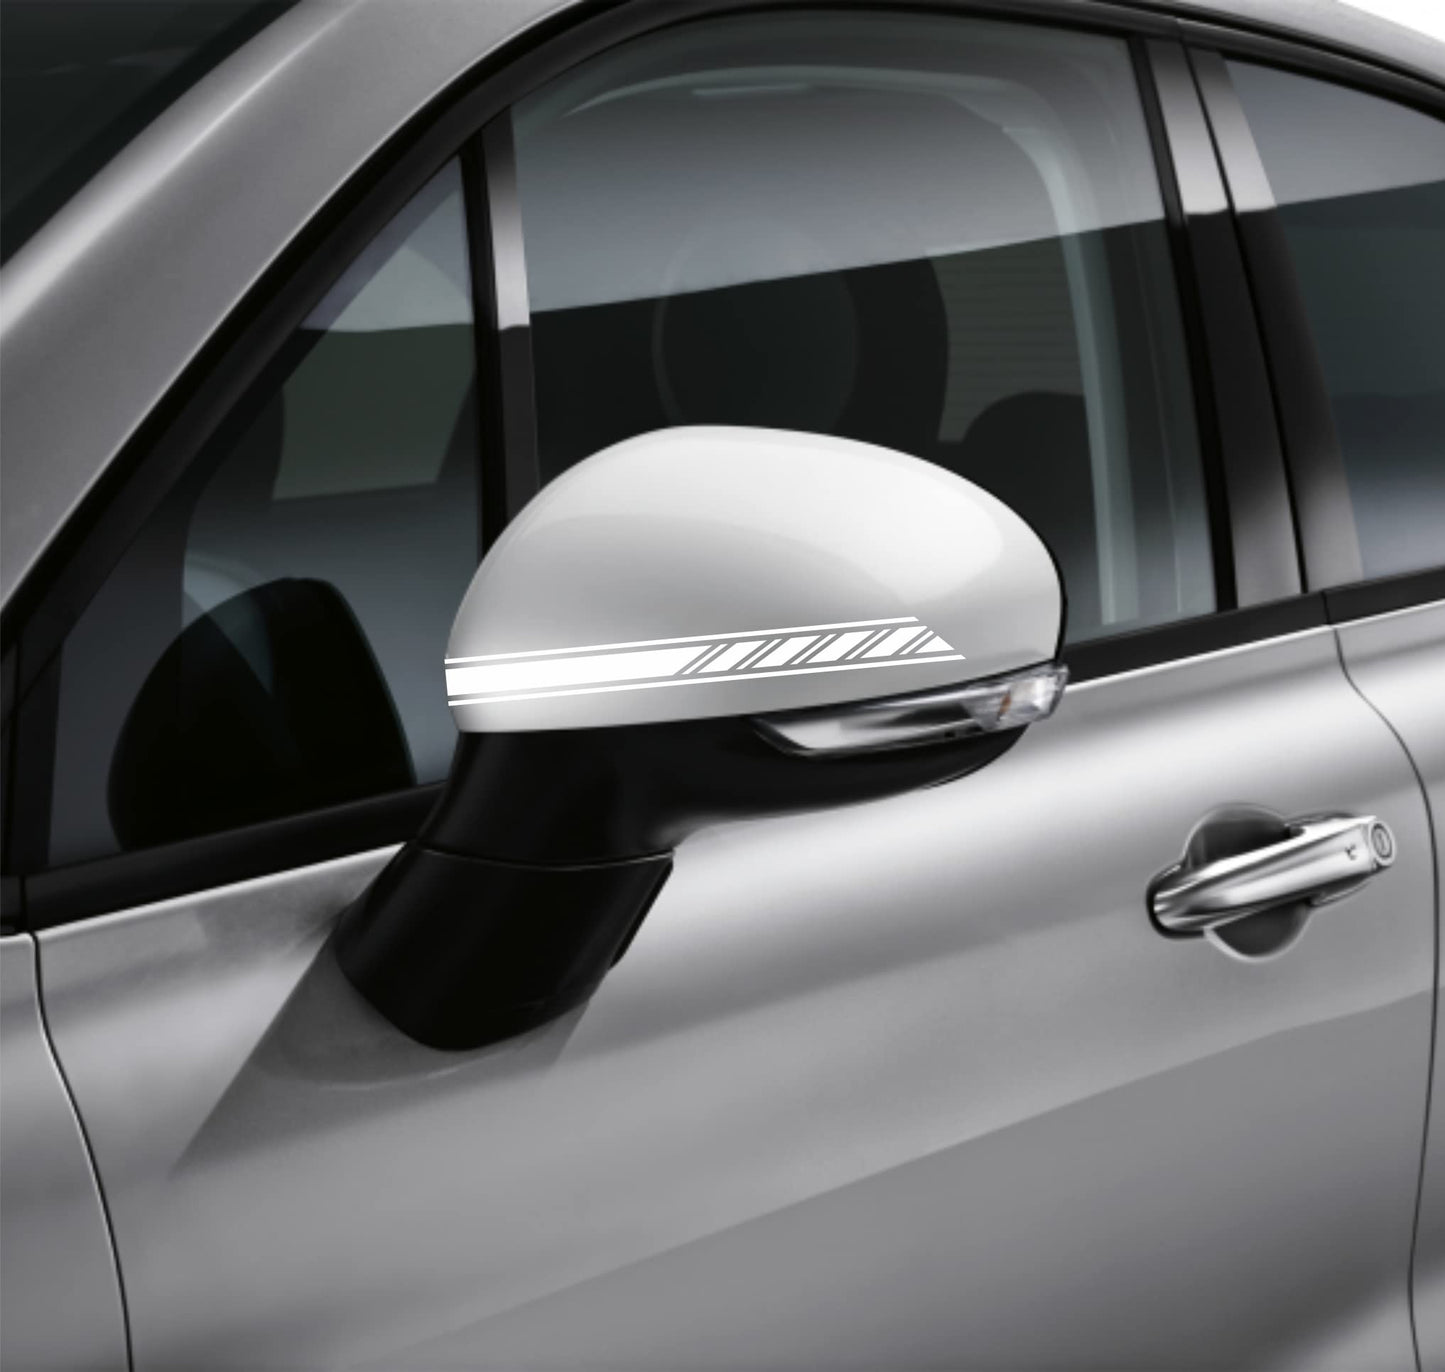 DualColorStampe Adesivi per Specchietti Retrovisori Car Stripes Strisce Design Confezione da 6 unità per Auto accessori auto stickers COD.0228 a €9.90 solo da DualColorStampe